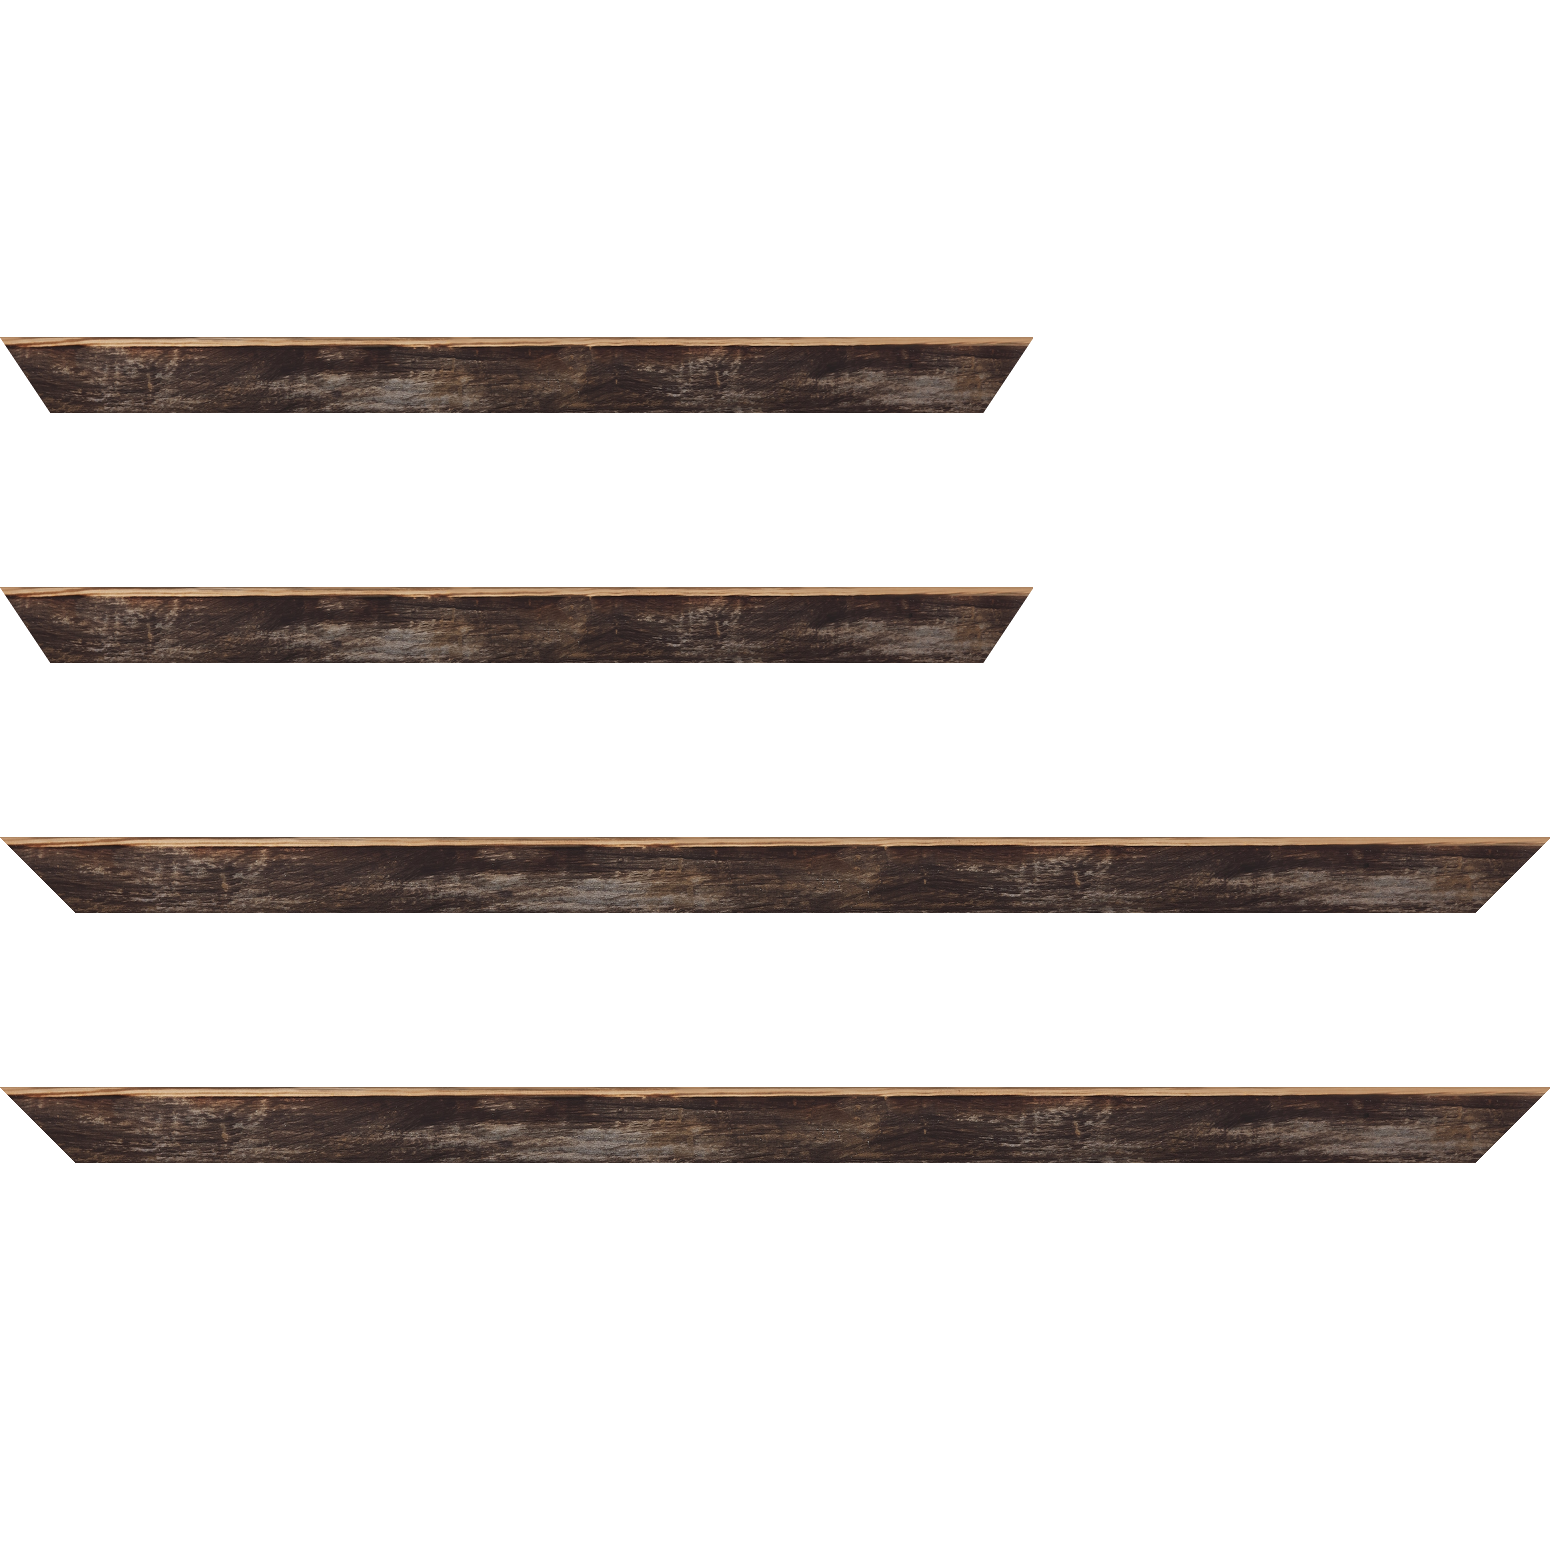 Baguette service précoupé bois profil arrondi en pente plongeant largeur 2.4cm couleur noir ébène effet ressuyé, angle du cadre extérieur filet naturel